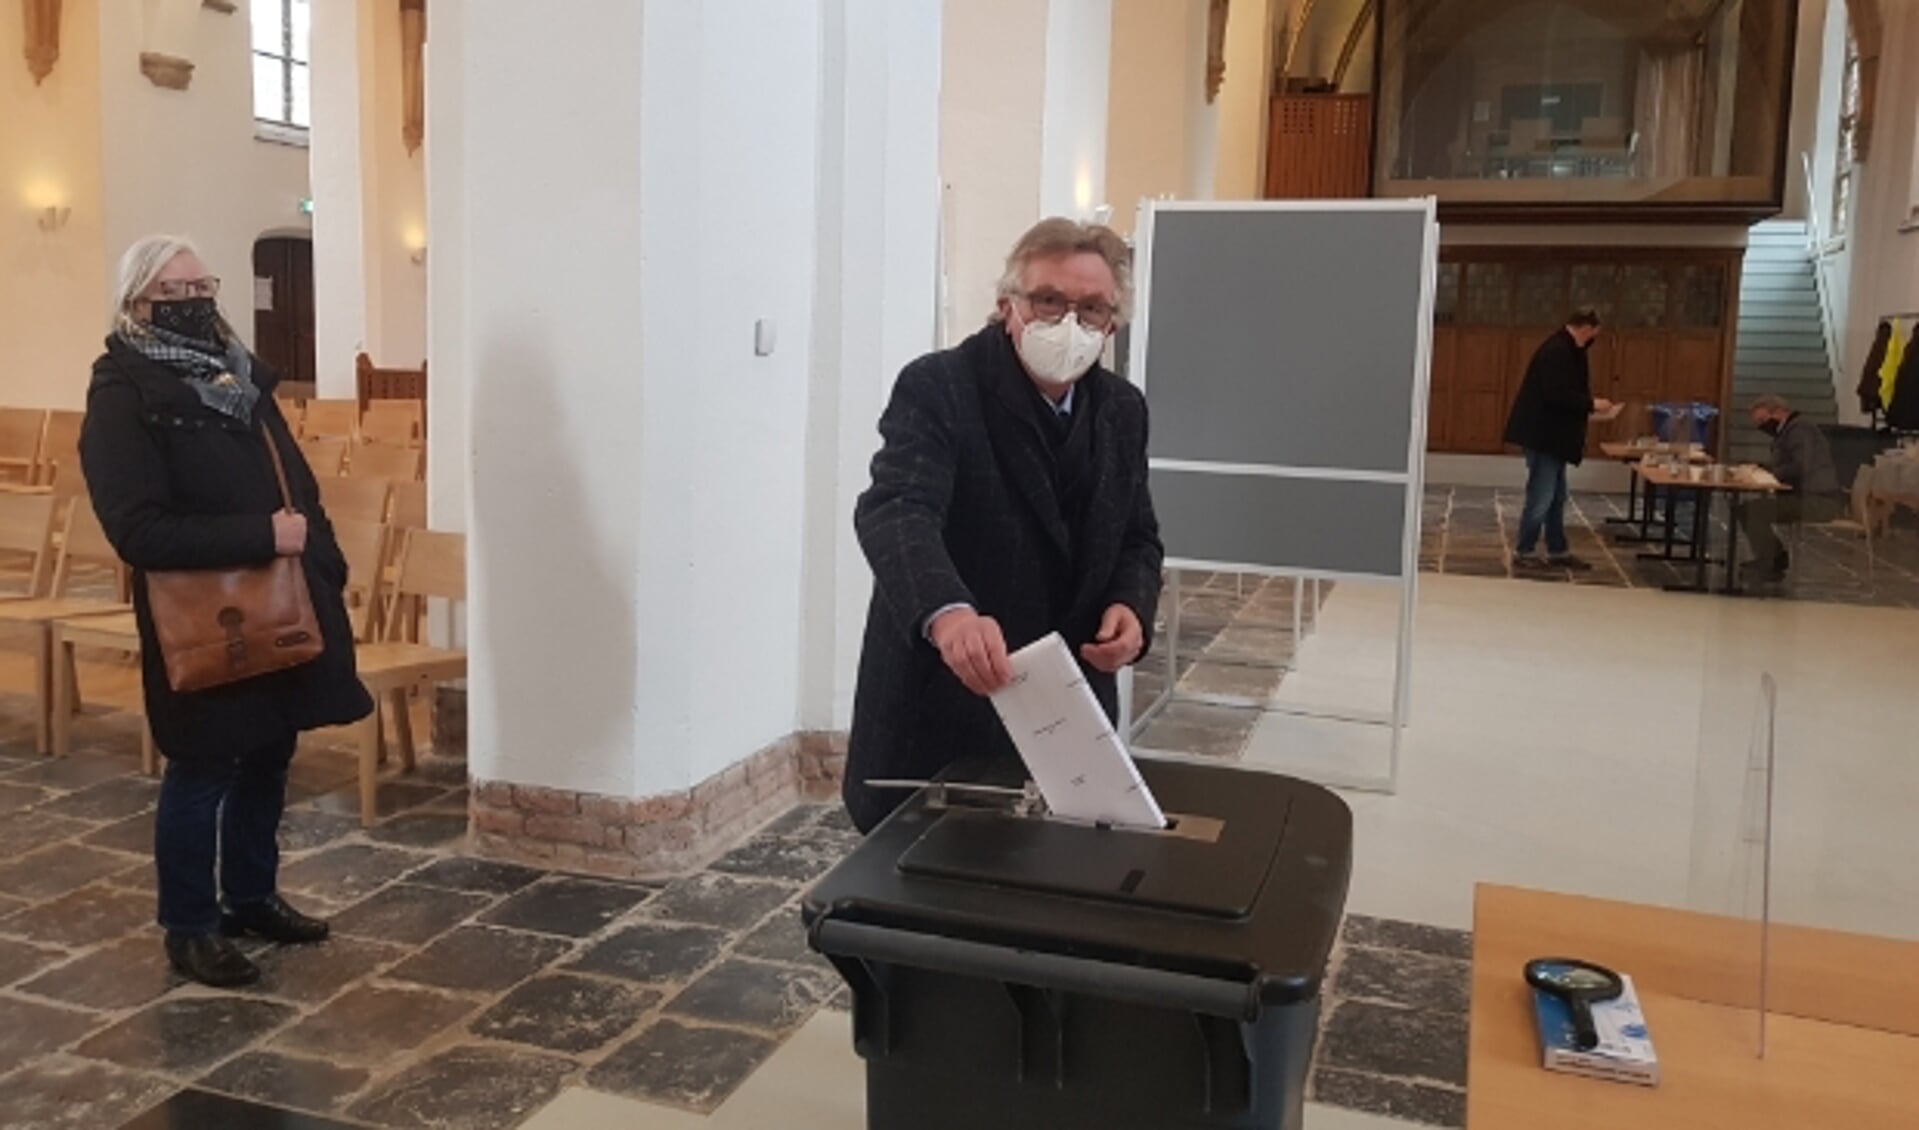 Burgemeester Geert van Rumund: "Elke stem telt"